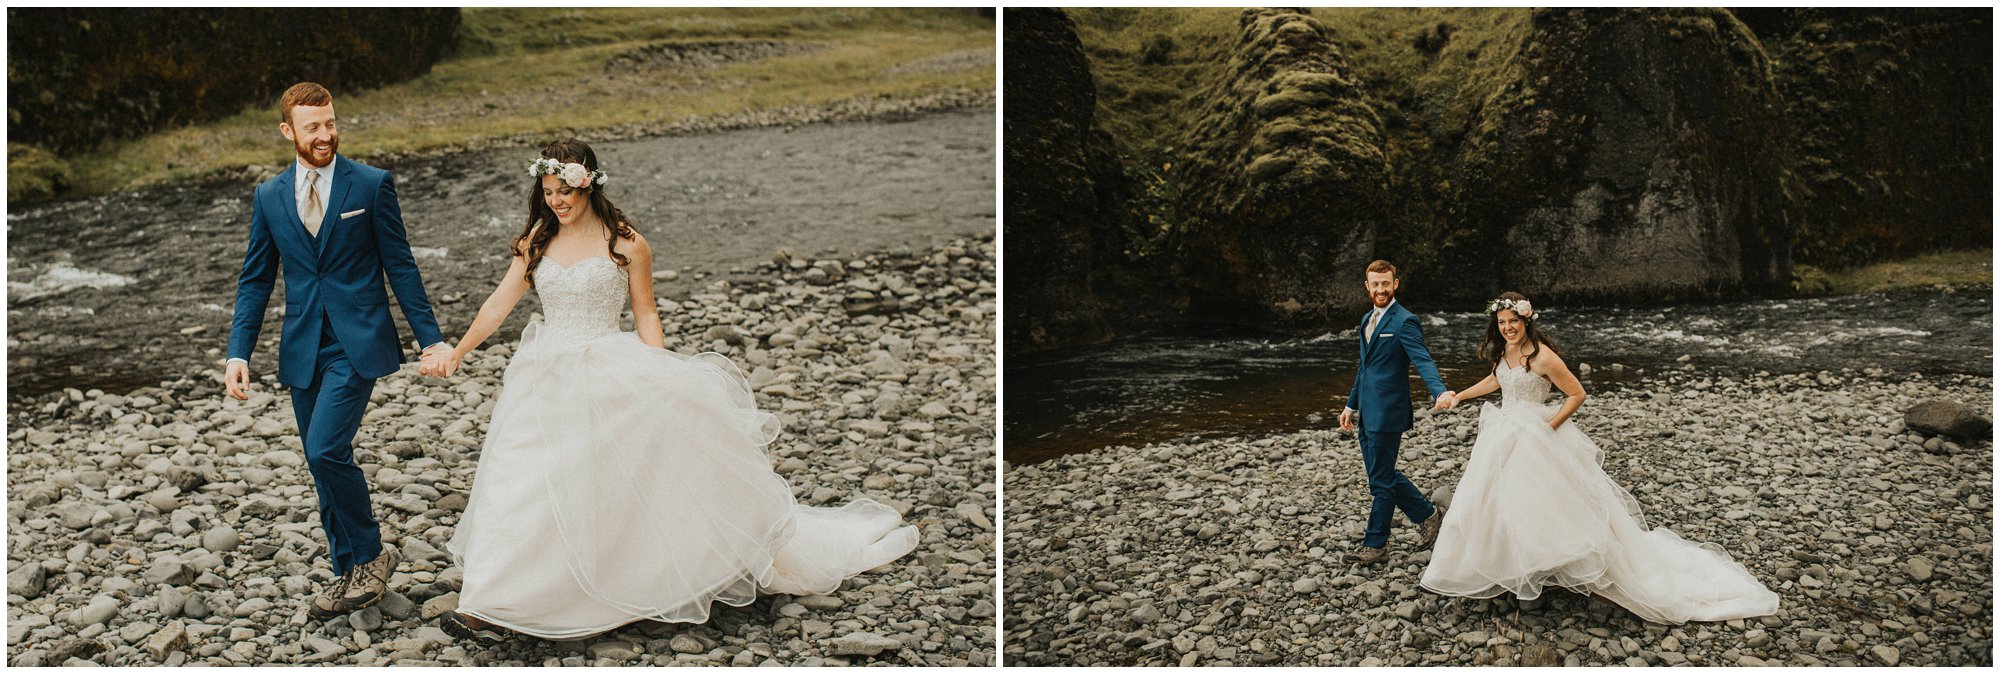 southern iceland elopement Fjaðrárgljúfur canyon wedding photographer